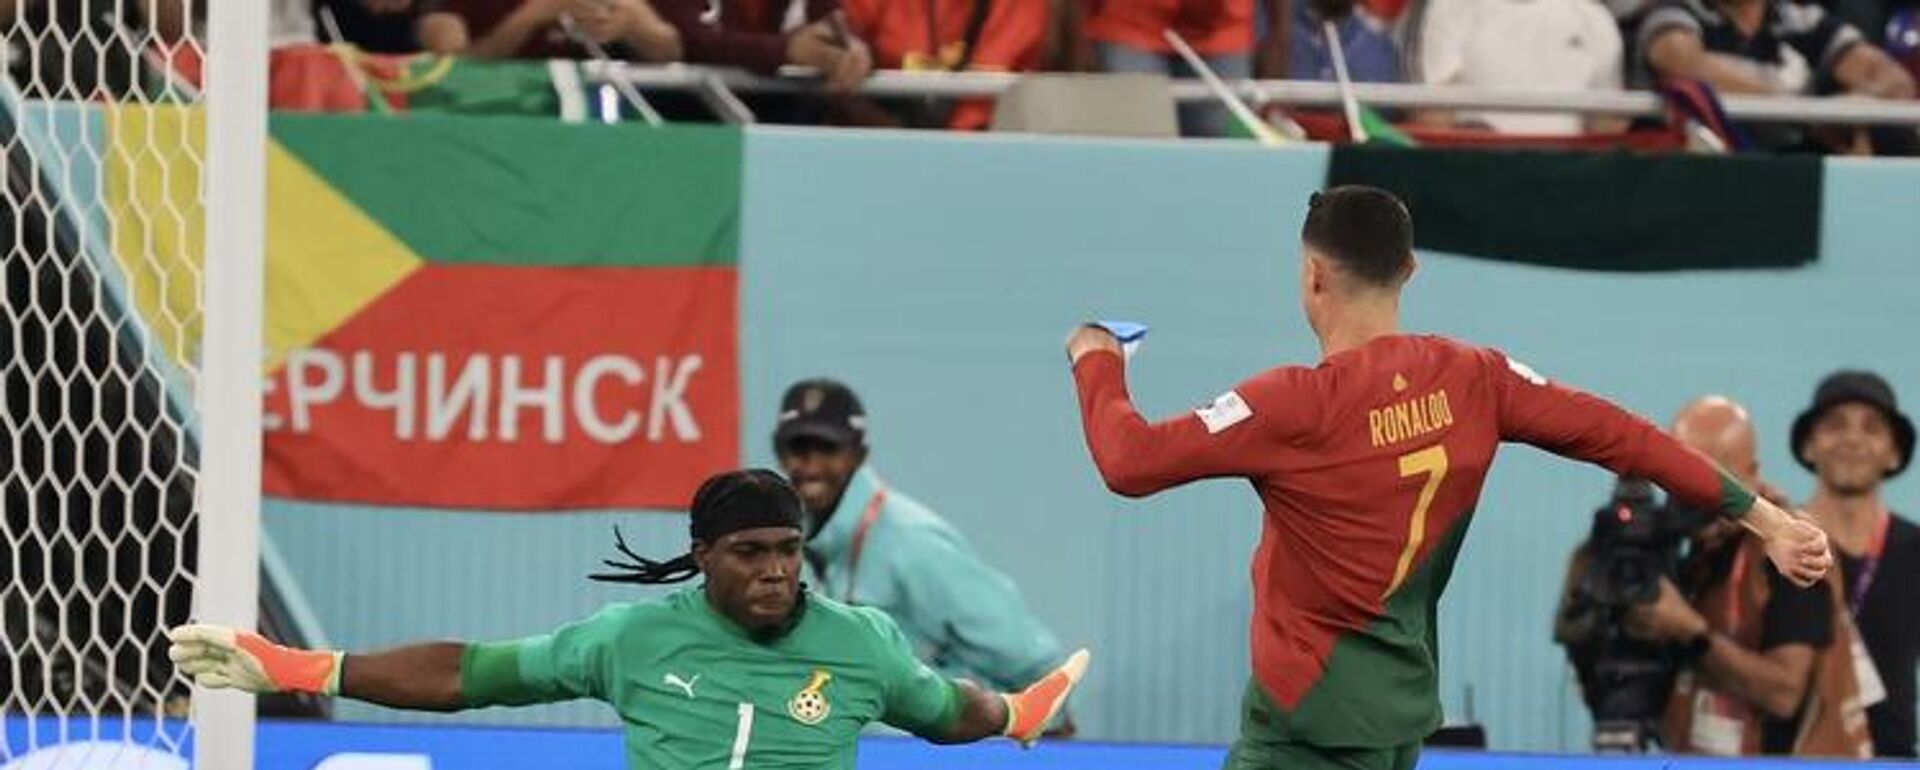 2022 FIFA Dünya Kupası'nda Portekiz, H Grubu'ndaki ilk maçında Gana'yı 3-2 mağlup etti. Portekiz'in yıldız ismi Cristiano Ronaldo, Gana'ya attığı golle, 5 farklı Dünya Kupası'nda gol atan ilk isim olarak tarihe geçti. - Sputnik Türkiye, 1920, 24.11.2022